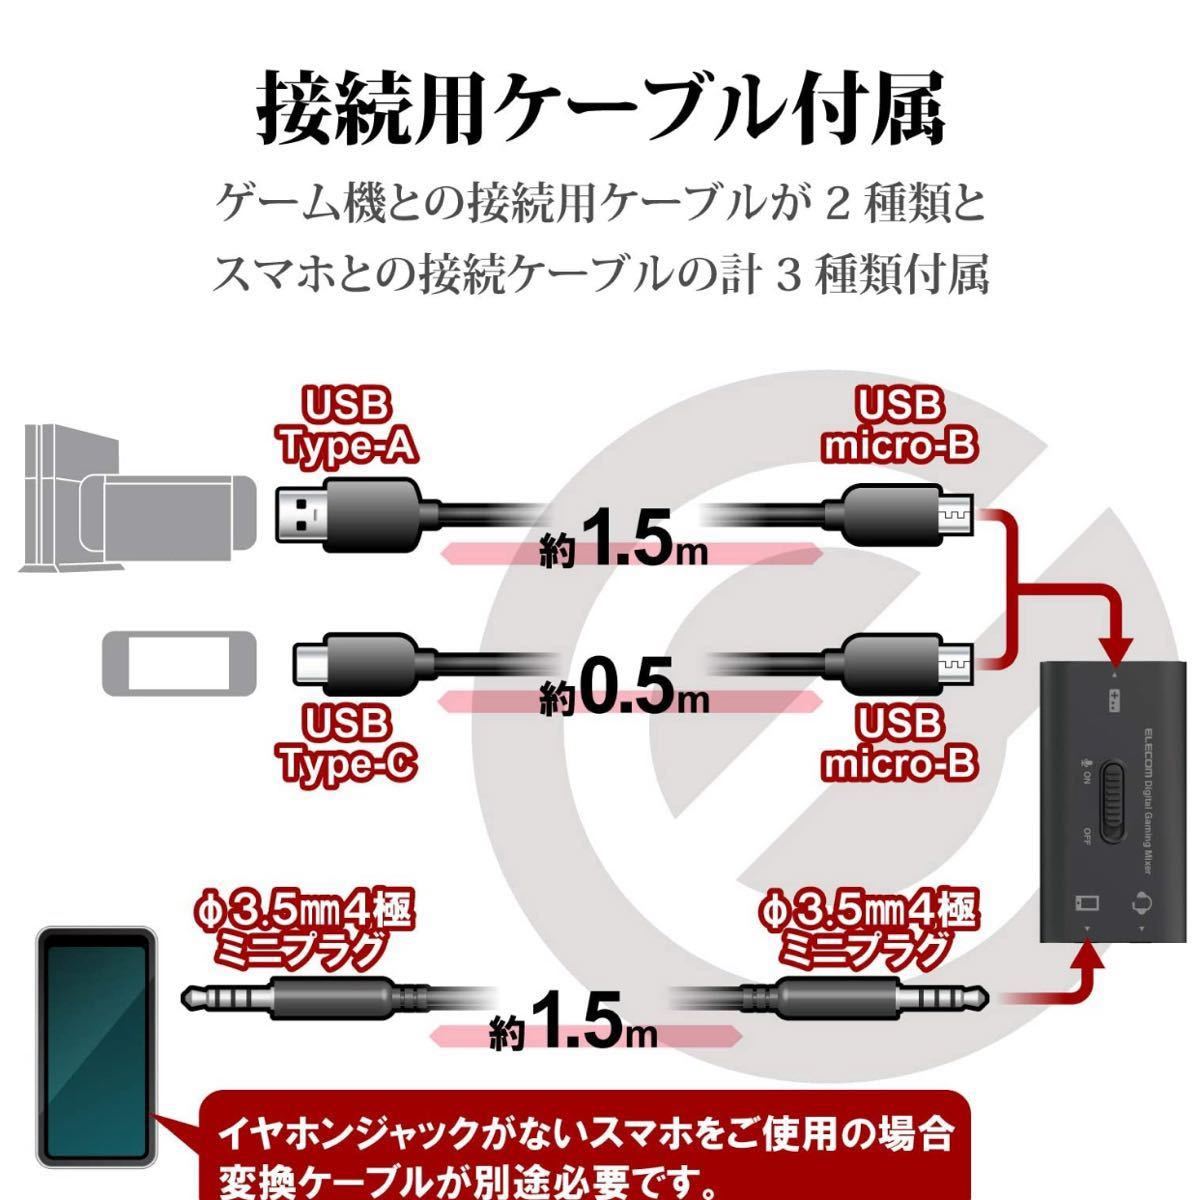 【本日発送】 Nintendo Switch ゲーミング オーディオミキサー ELECOM